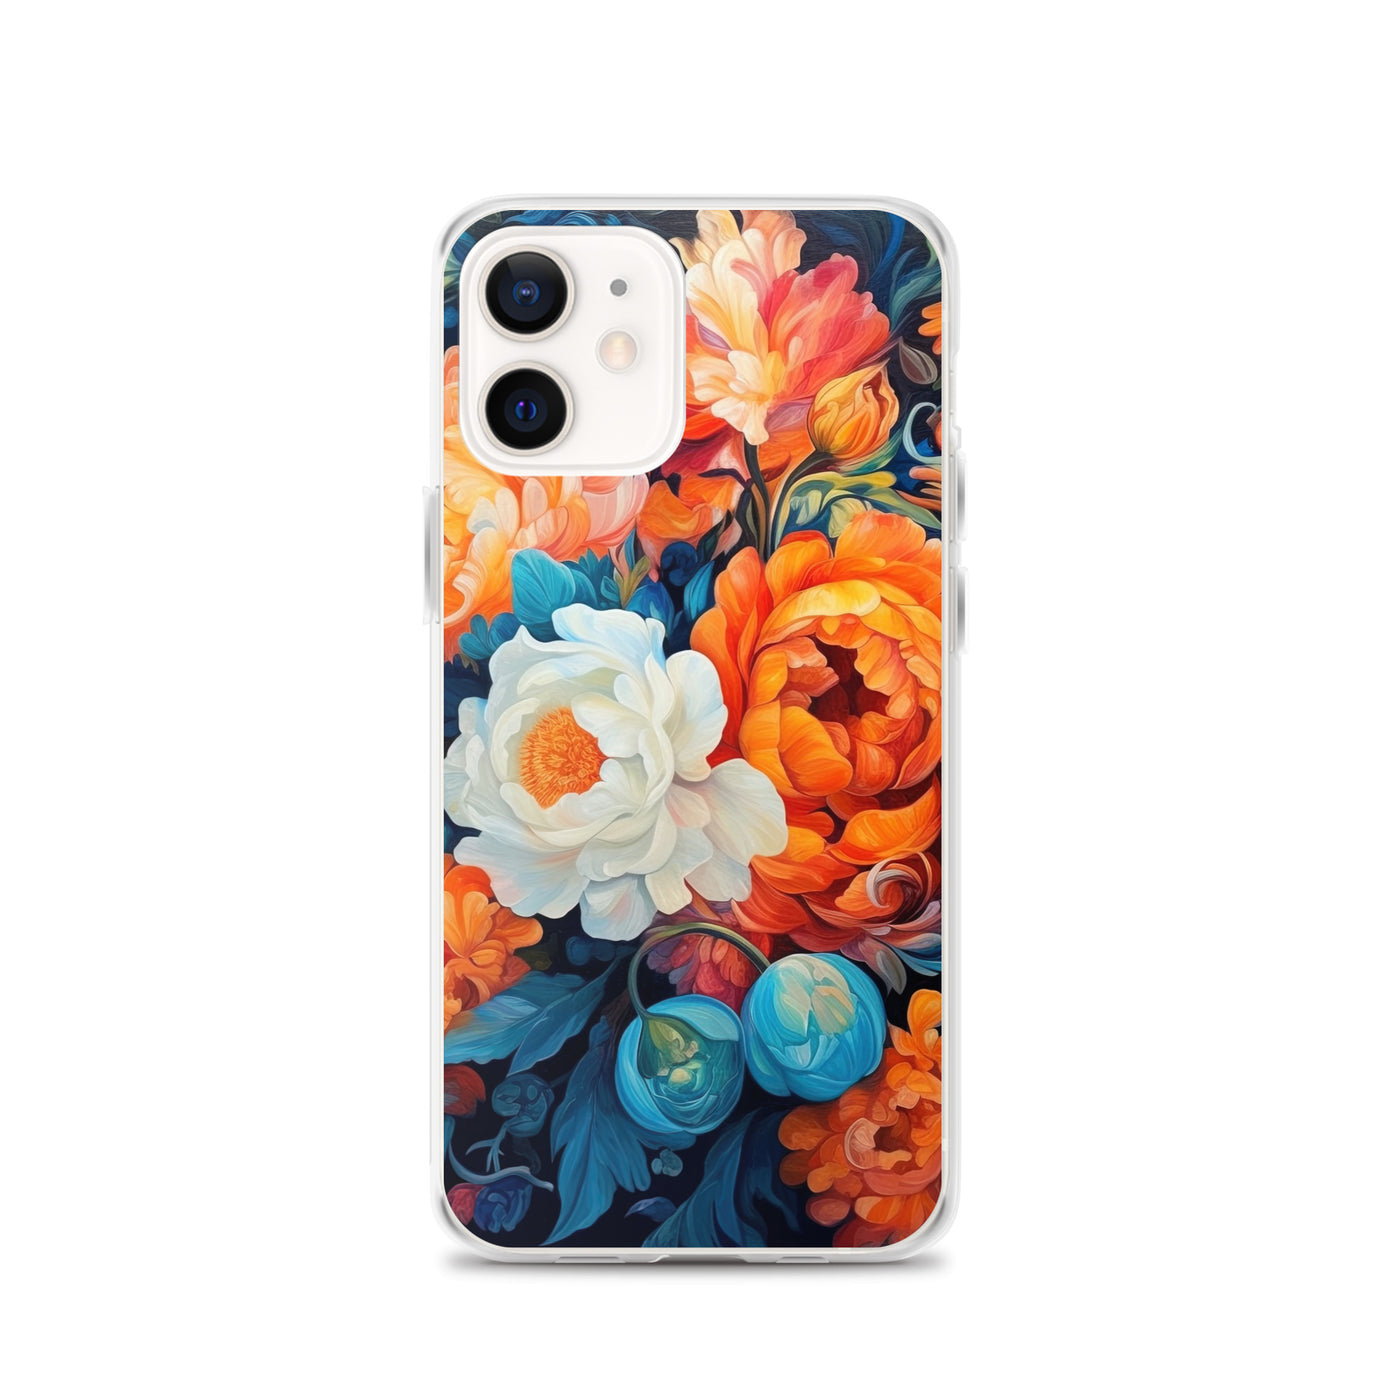 Bunte Blumen - Schöne Malerei - iPhone Schutzhülle (durchsichtig) camping xxx iPhone 12